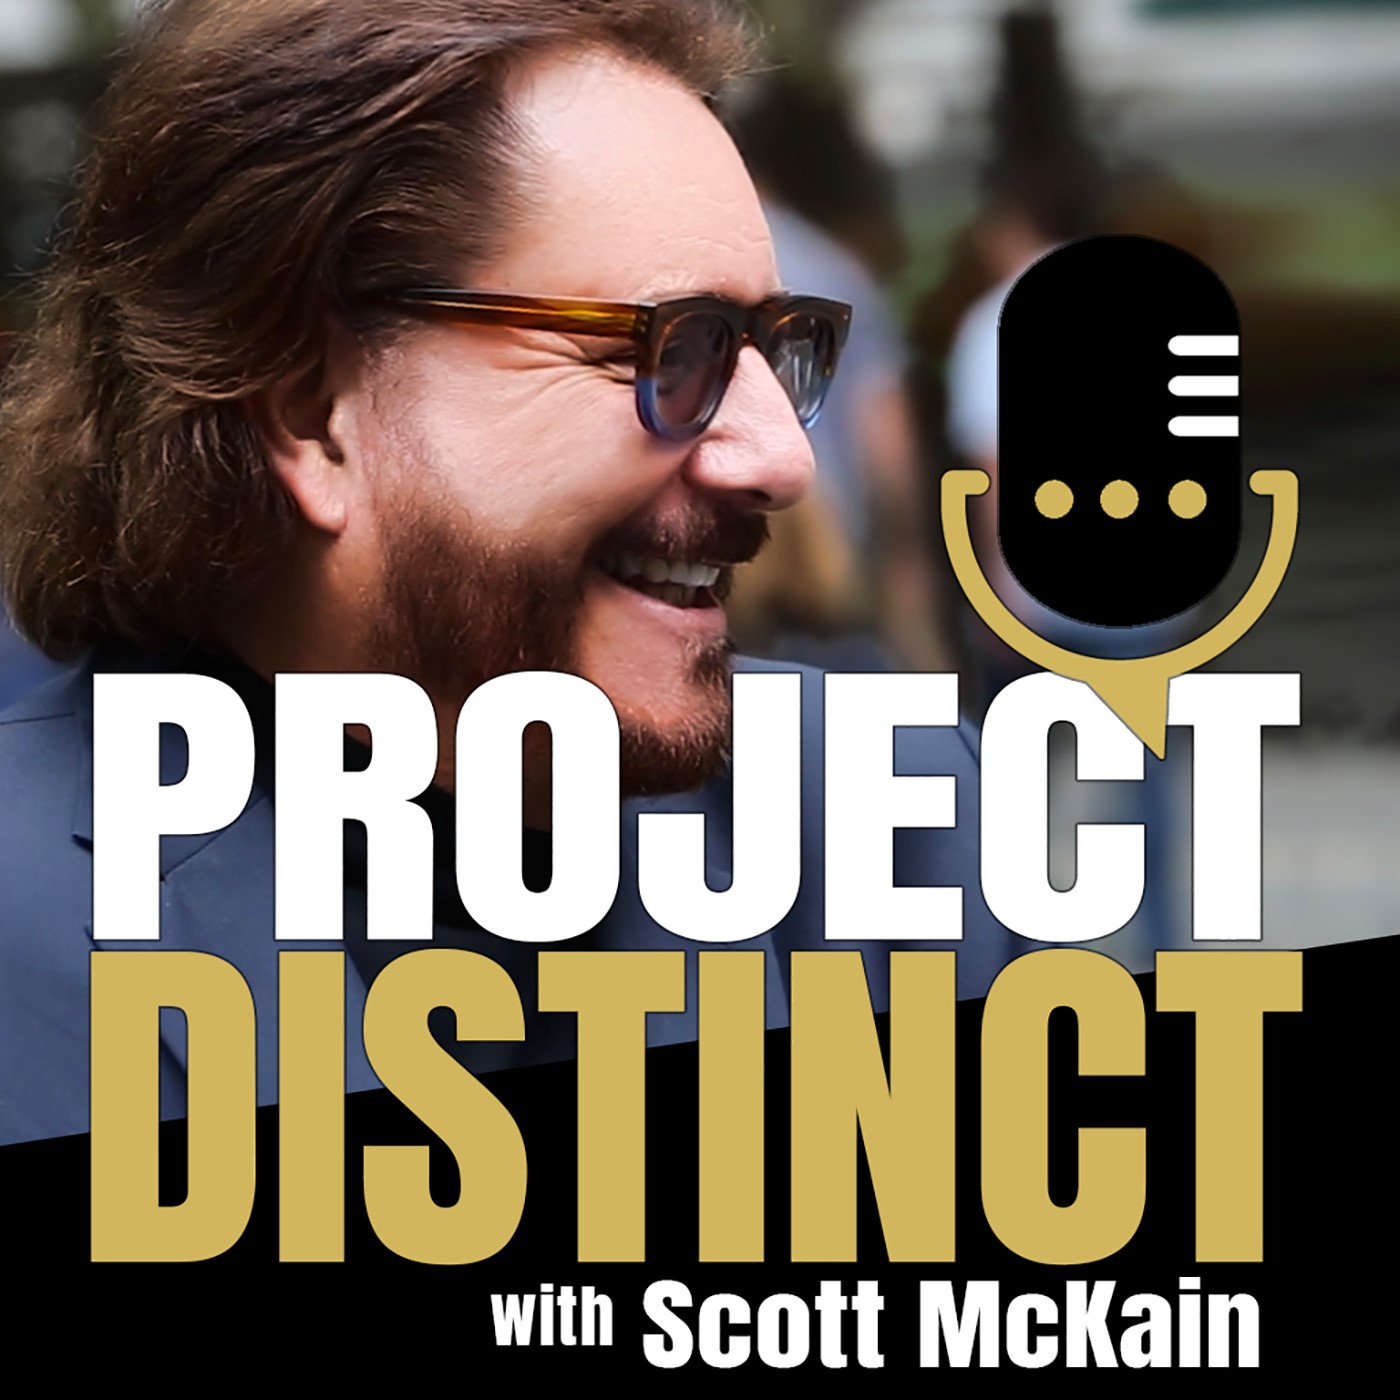 Create Distinction with Scott McKain